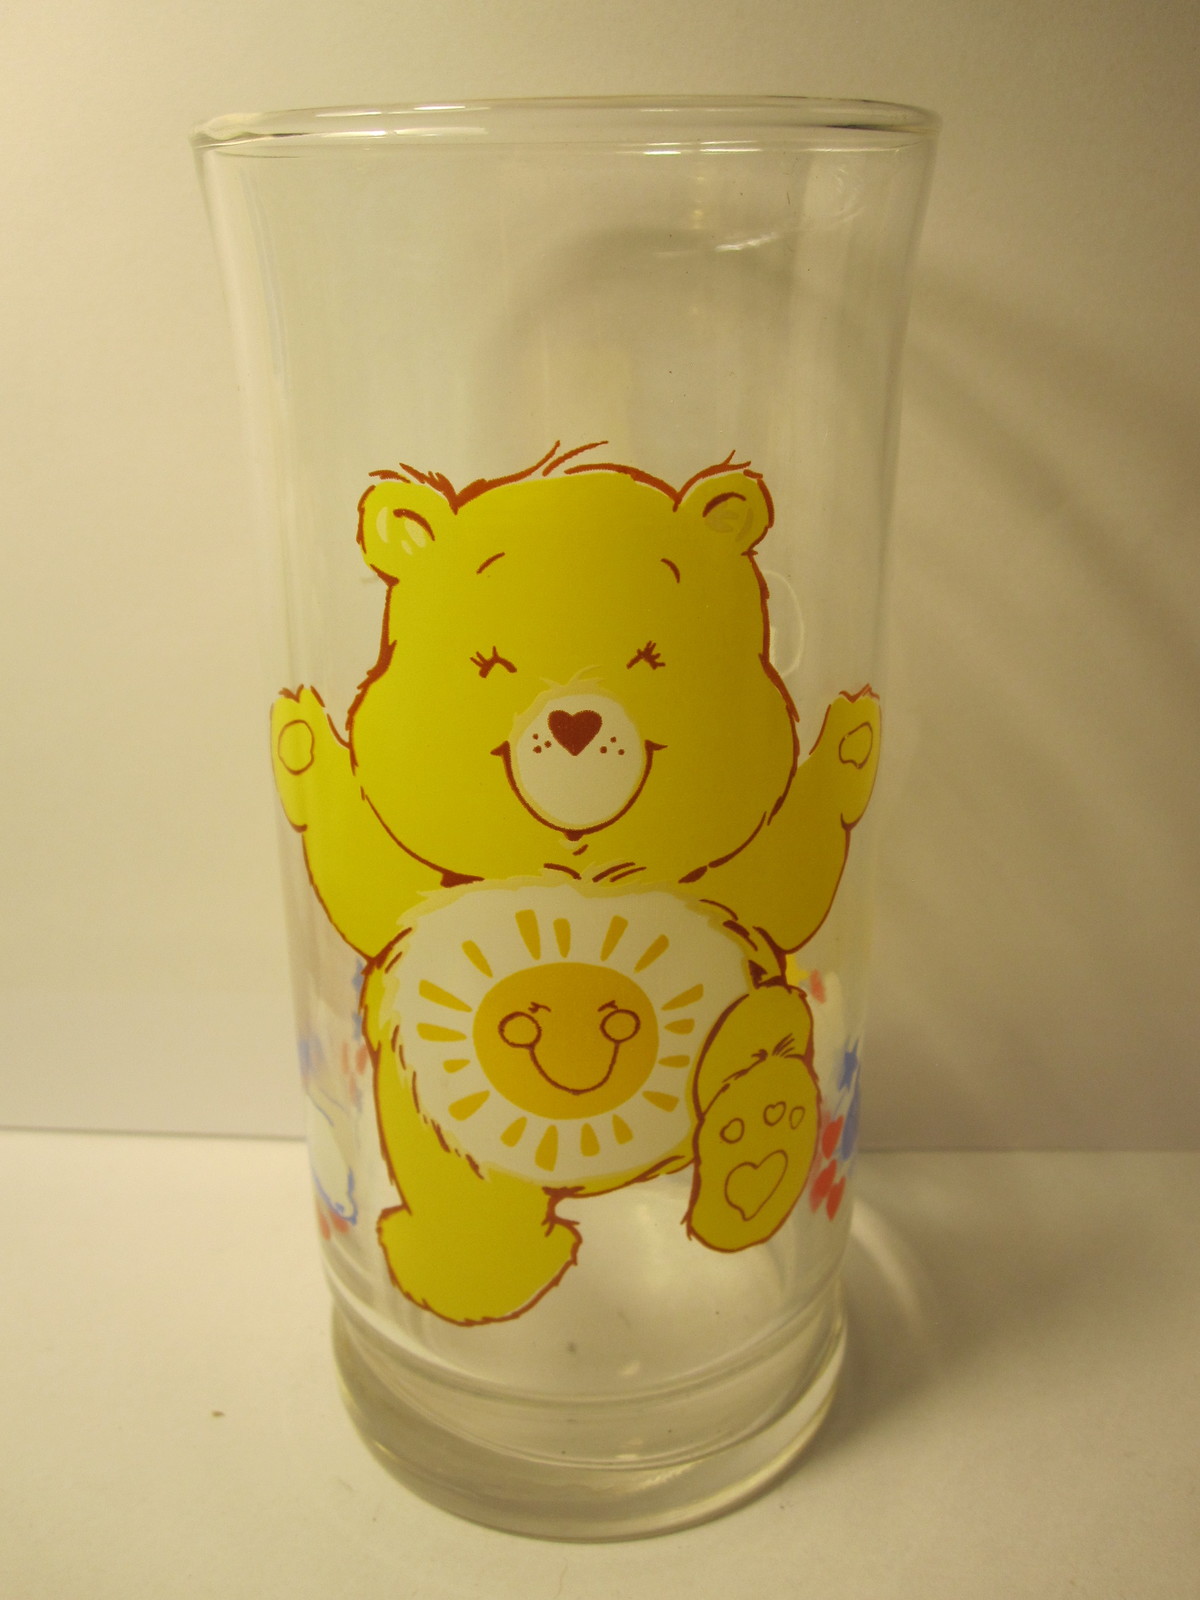 1983 Care Bears / Pizza Hut Promotional Glass Tumbler - Funshine Bear - $10.00